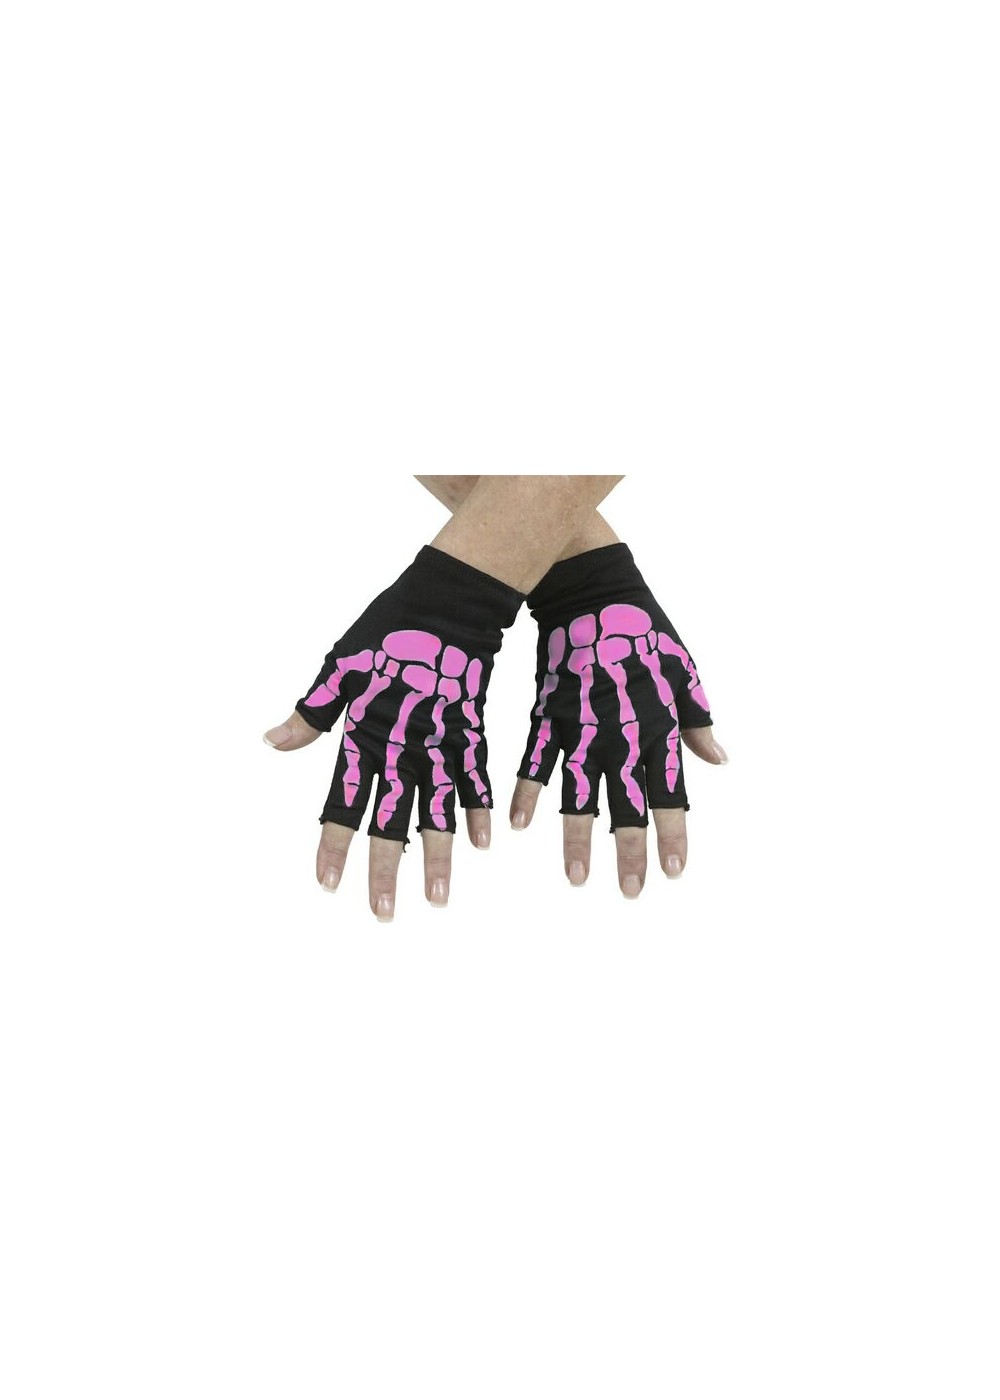 Bony Fingerless Child Gloves